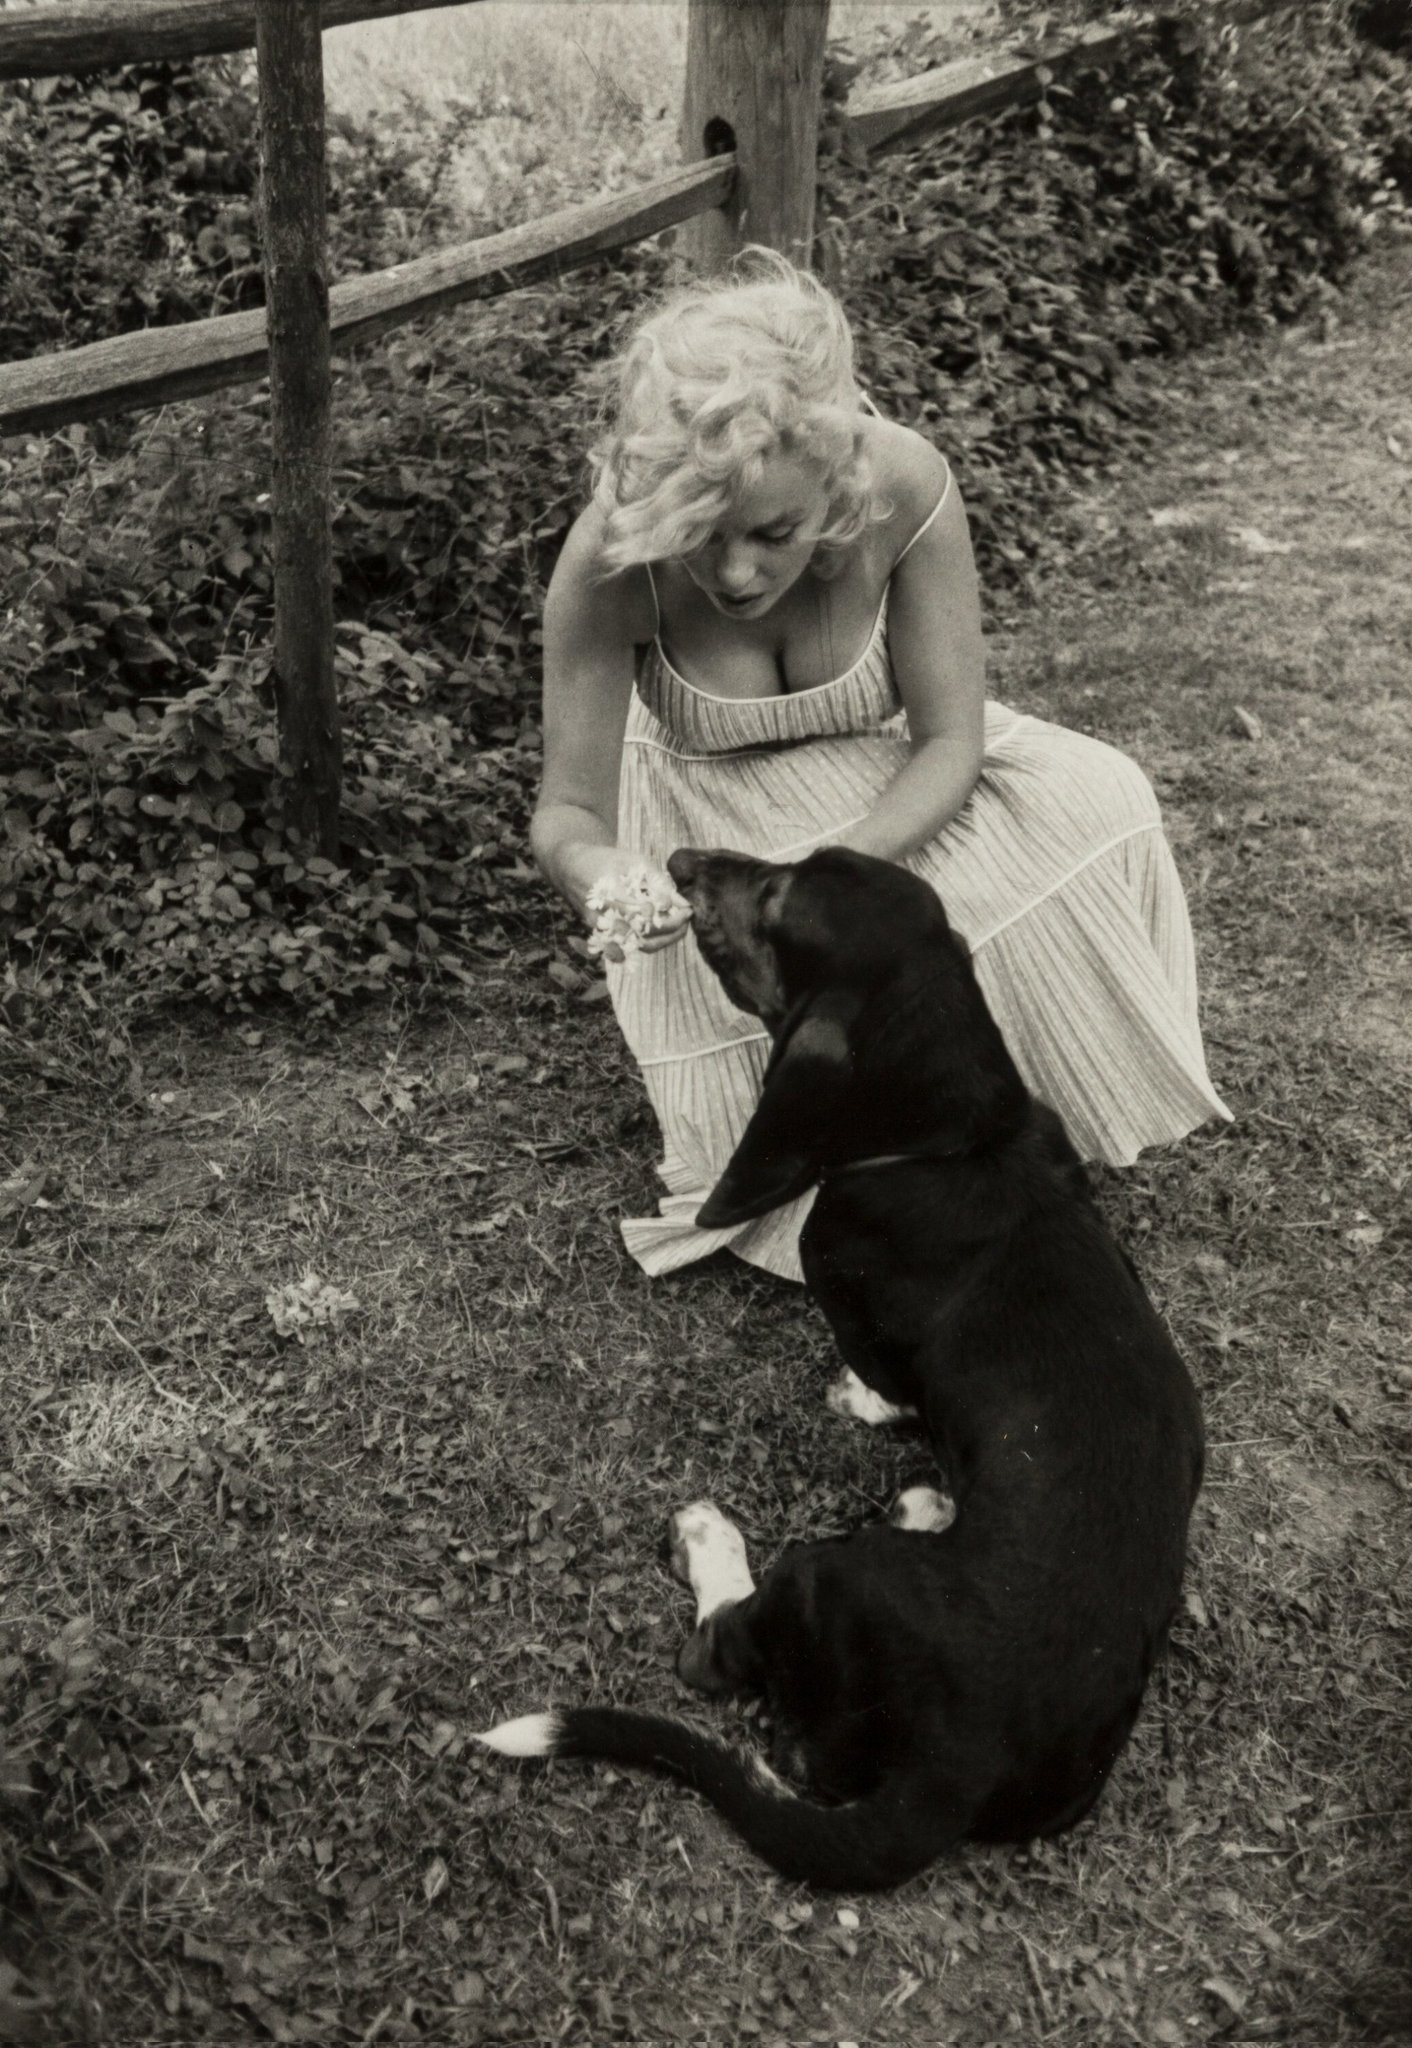 A série de fotos que mostra Marilyn Monroe à vontade com seu cachorro